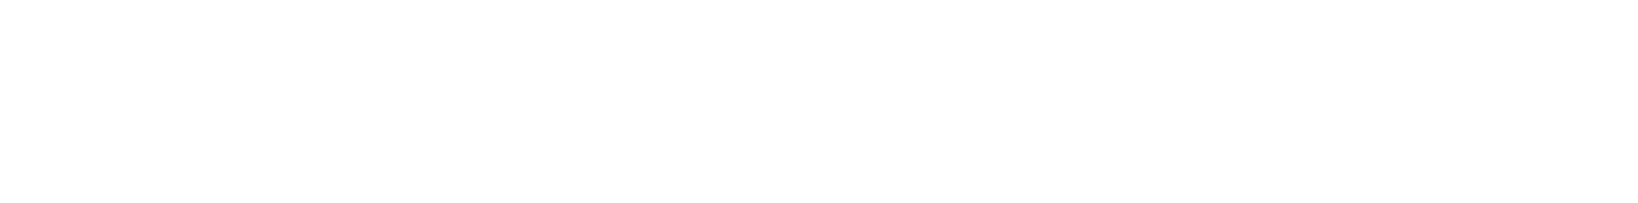 Logo Lazare Boddaert, développeur web